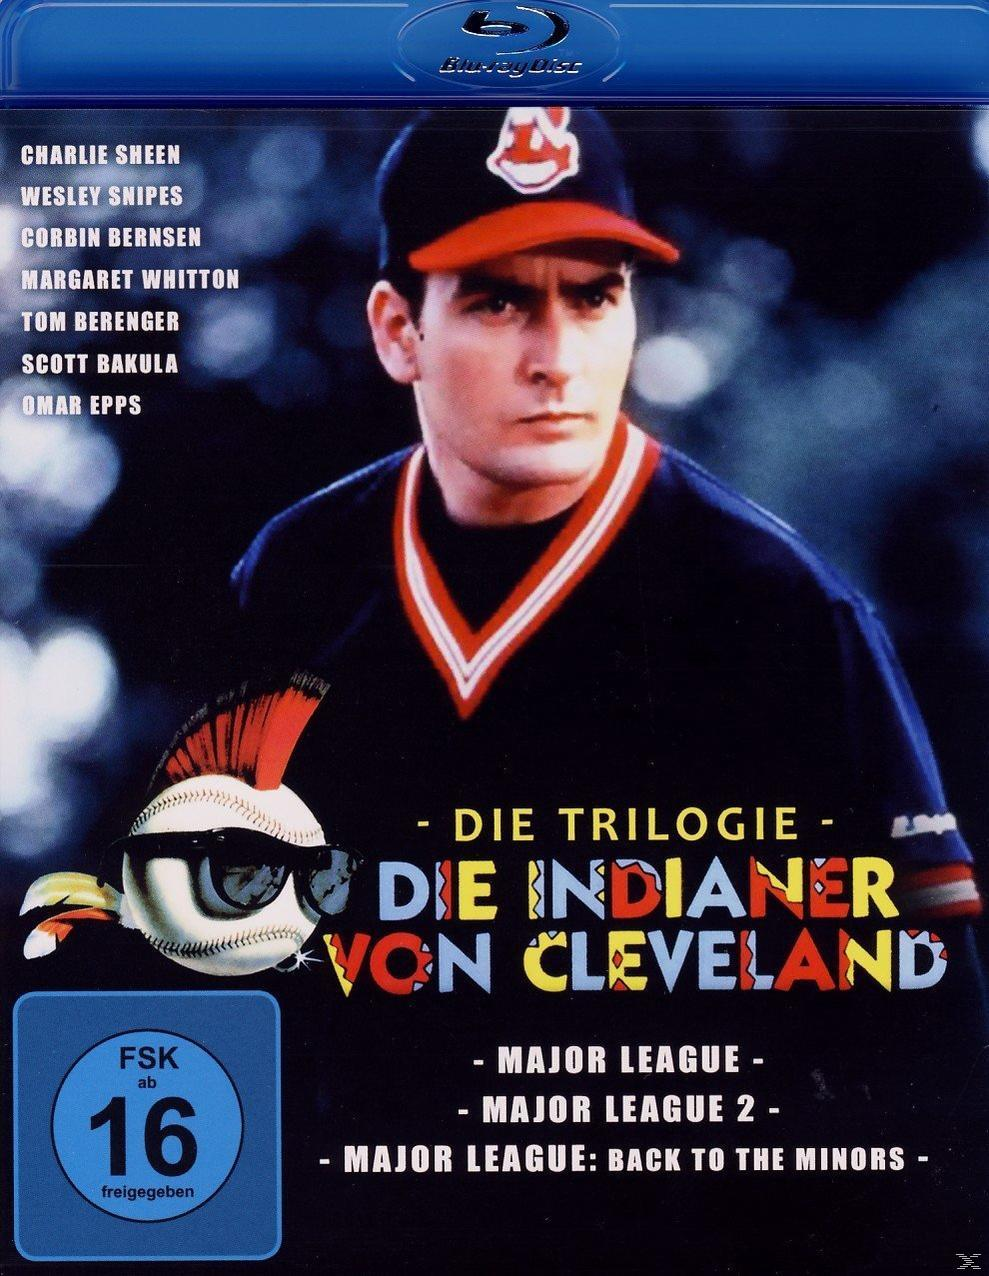 Die Indianer von Cleveland TRILOGIE - DIE Blu-ray